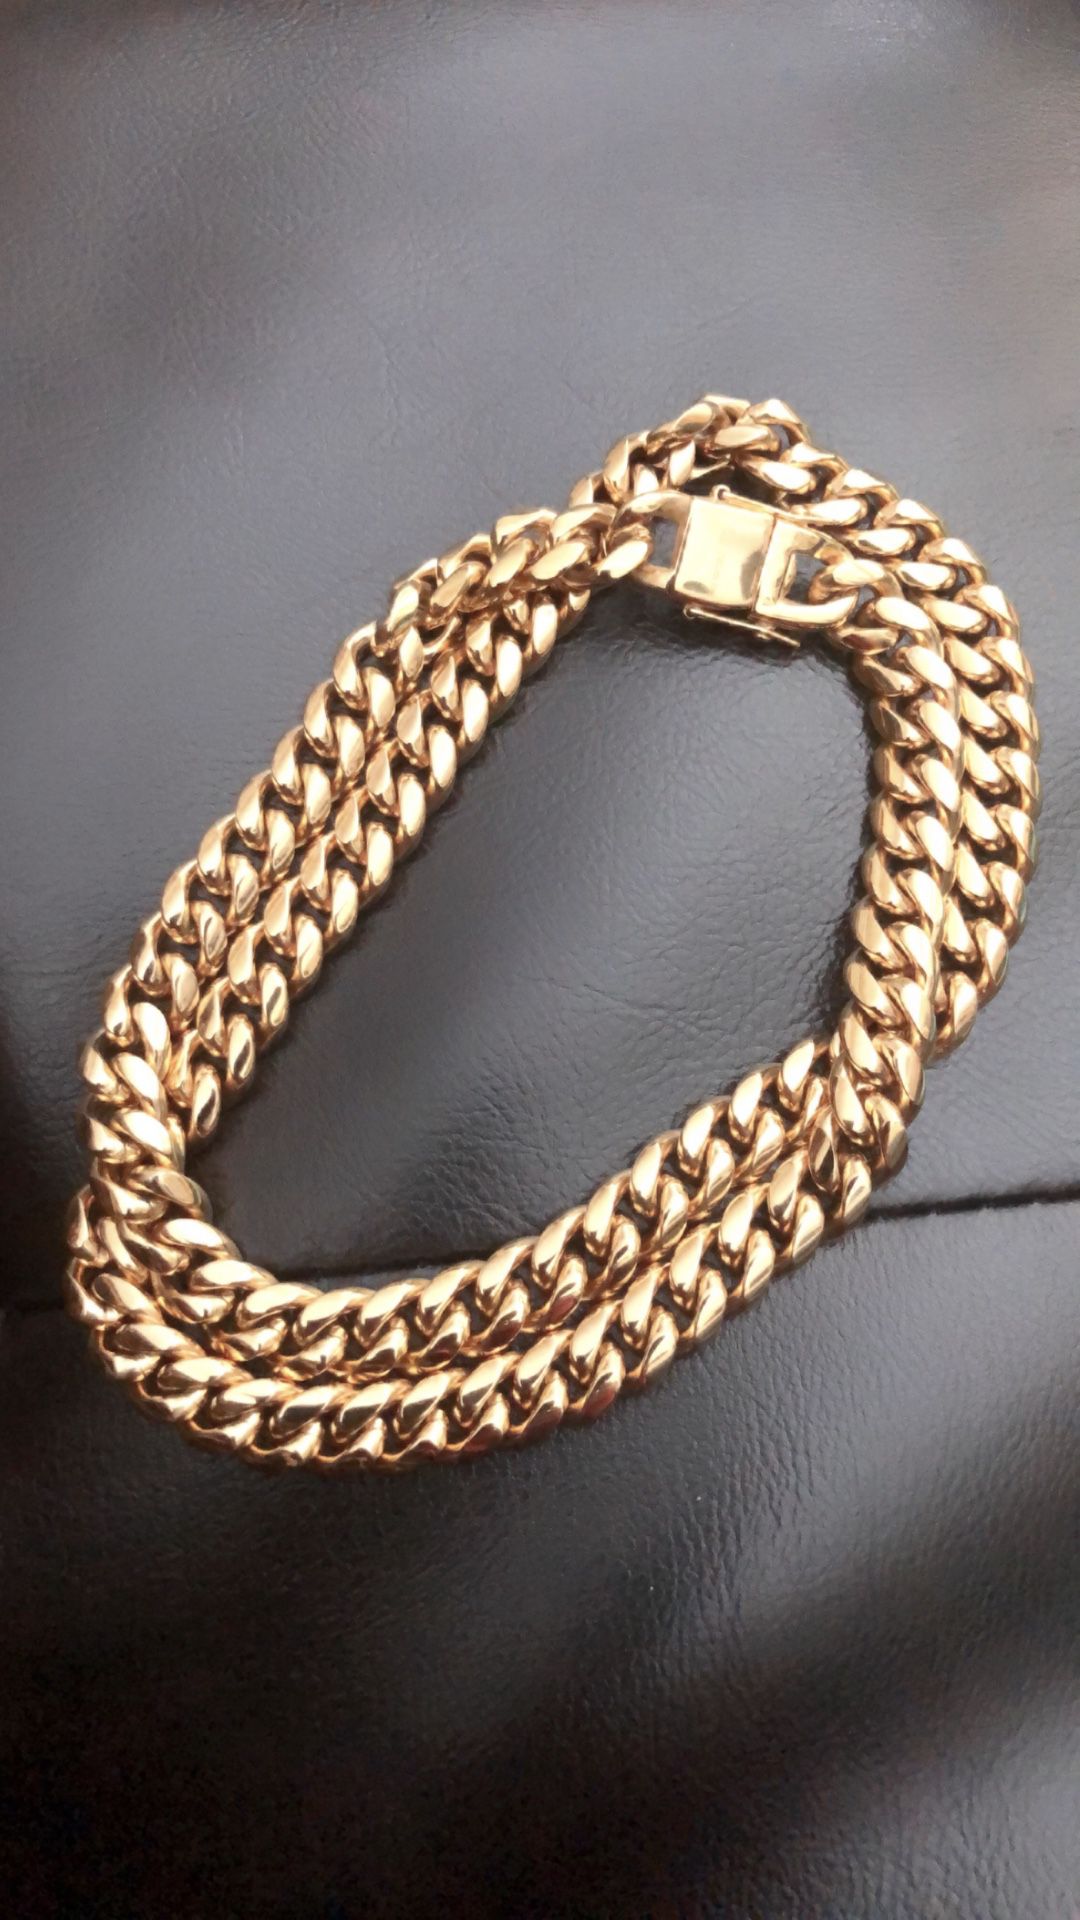 Good chain for men